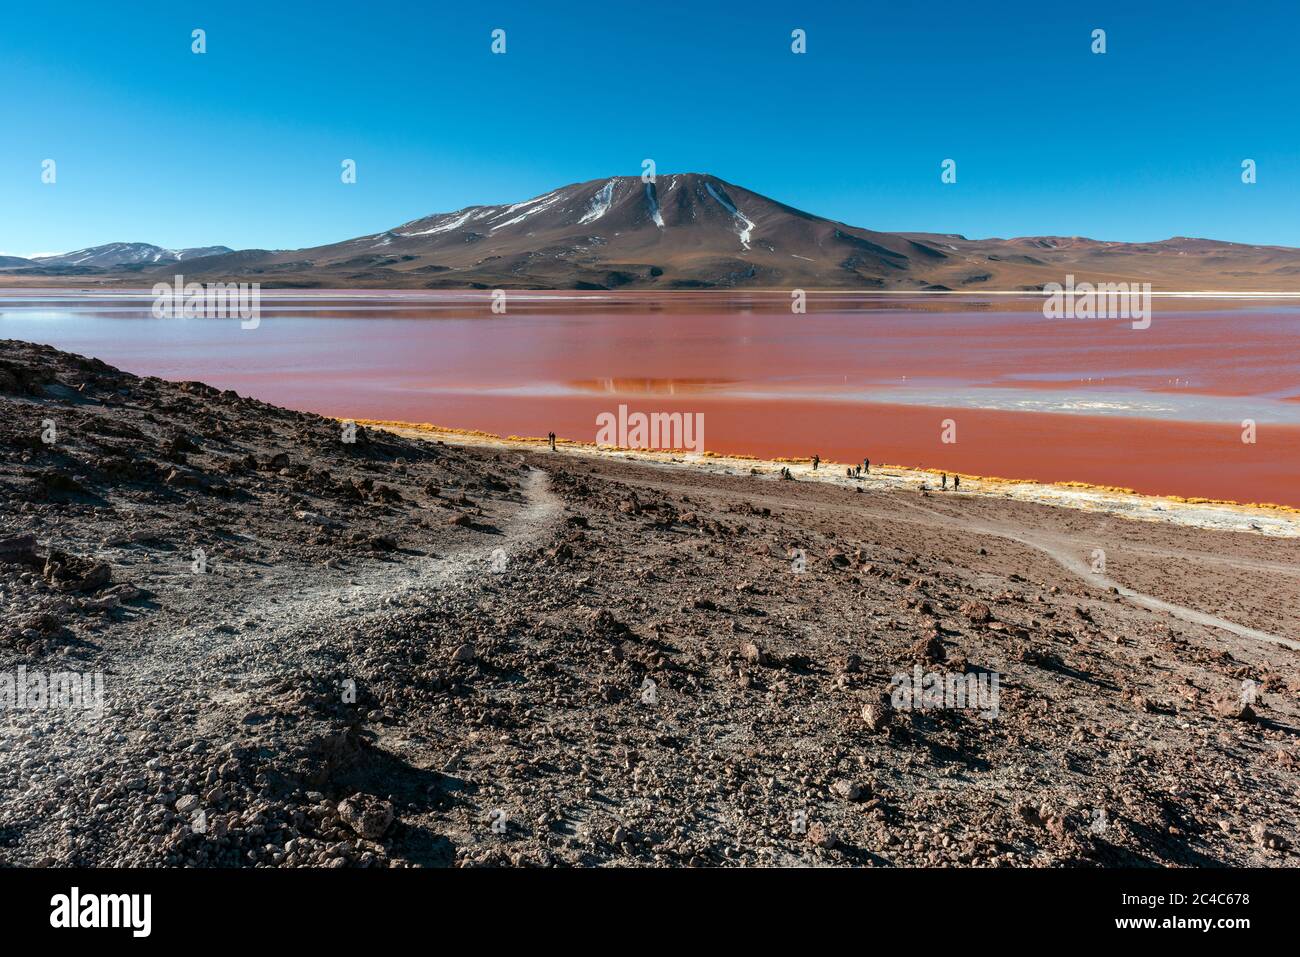 Paisaje de la Laguna Colorada o Laguna Roja en el altiplano de los Andes, desierto salado de Uyuni, Bolivia. Foto de stock